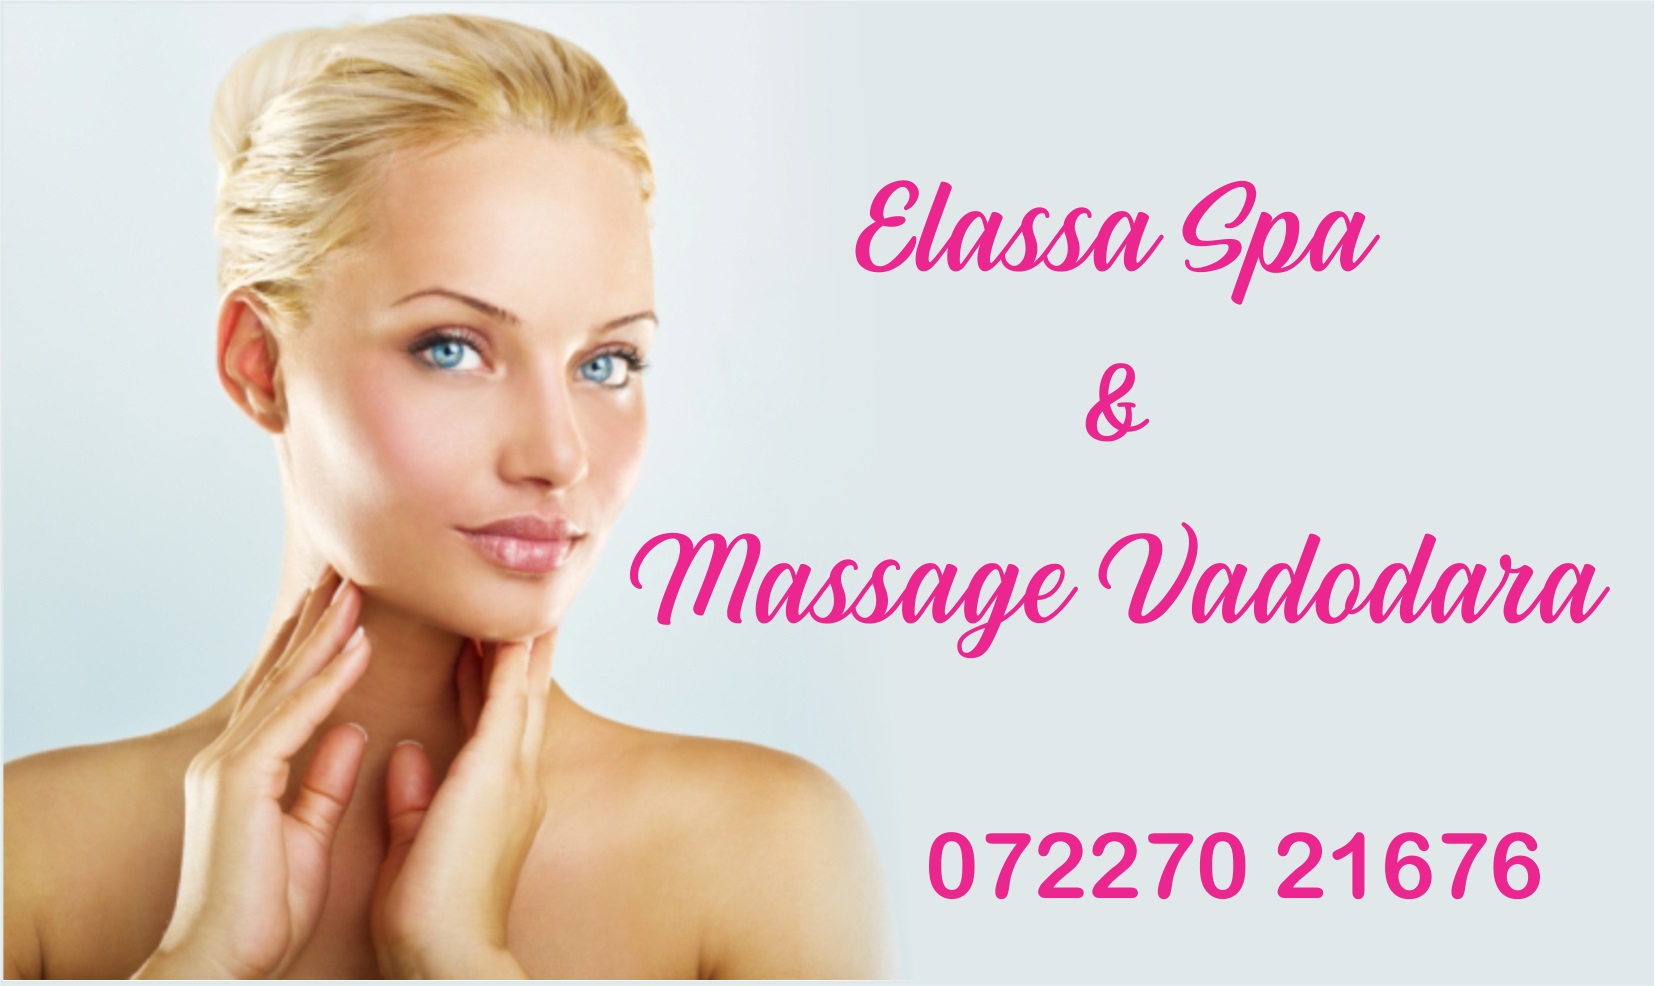 Full Body Massage Elassa Spa And Massage Spa In Vadodara